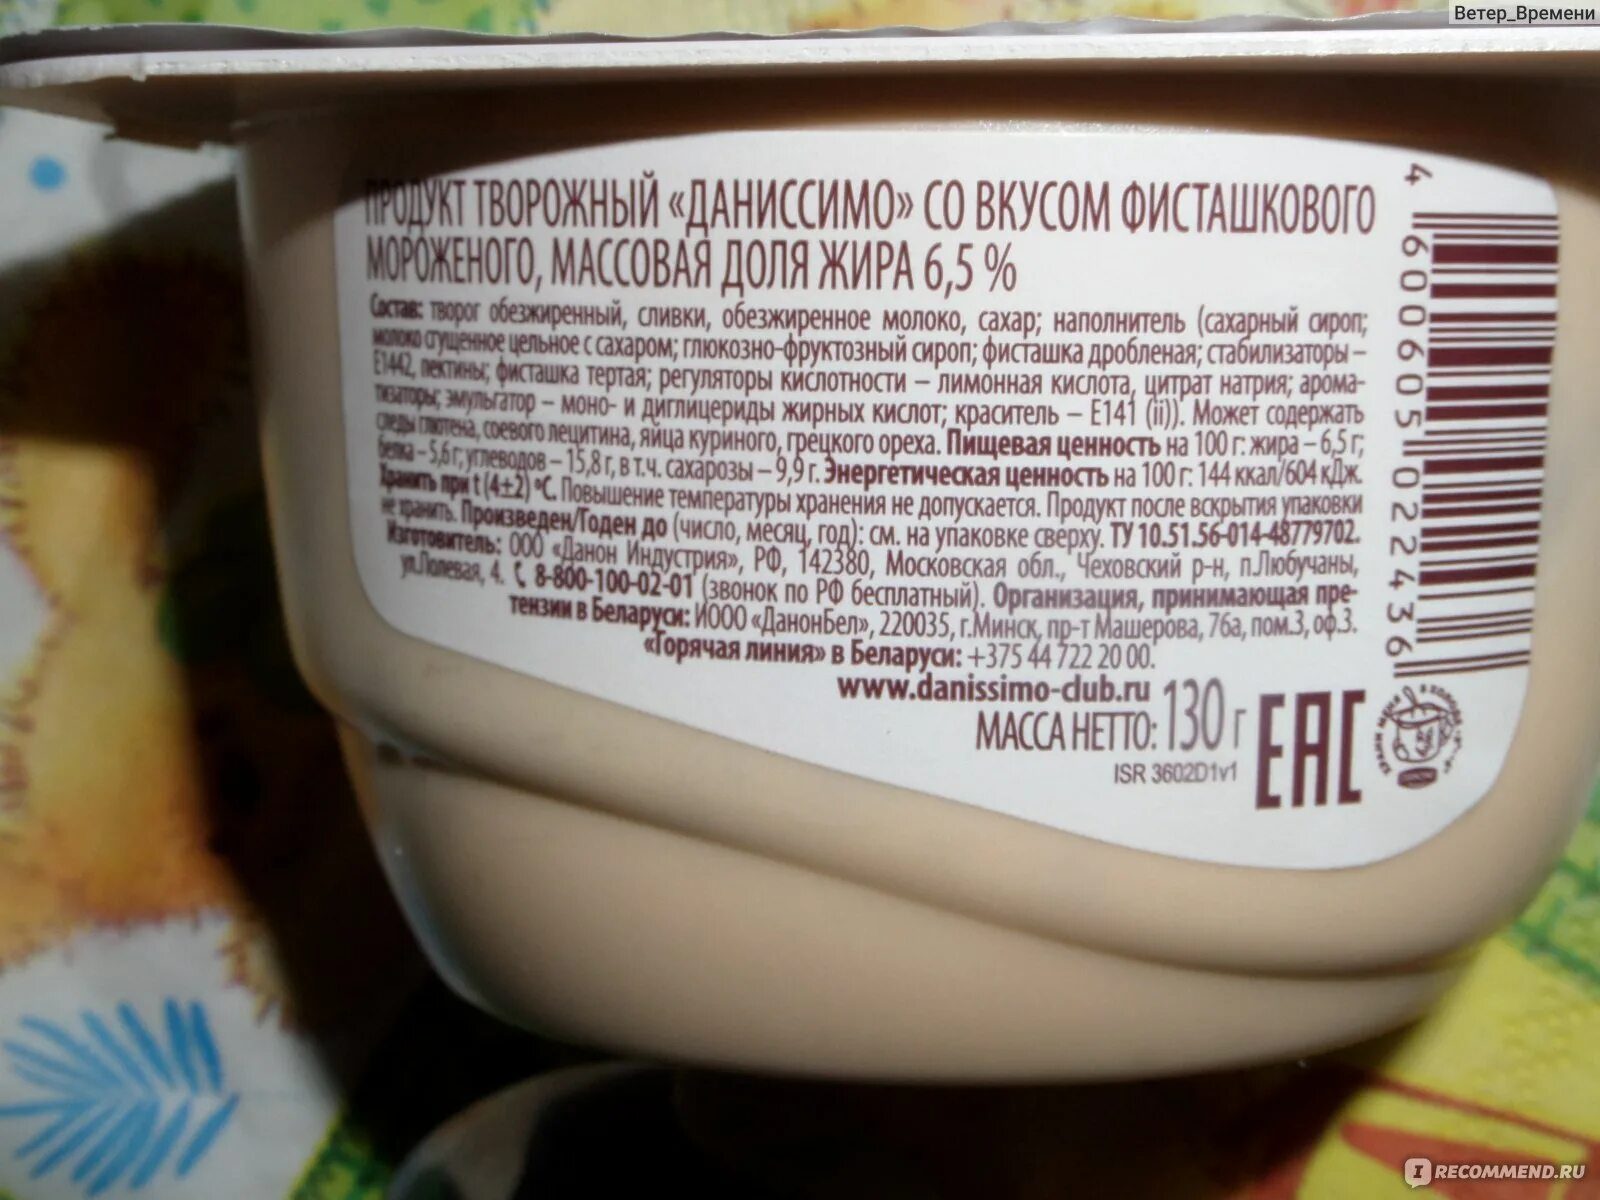 Где больше сахара в сладком творожке. Даниссимо состав. Йогурт фисташковое мороженое. Пищевая ценность йогурта в 100 граммах. Йогурт Даниссимо калорийность.